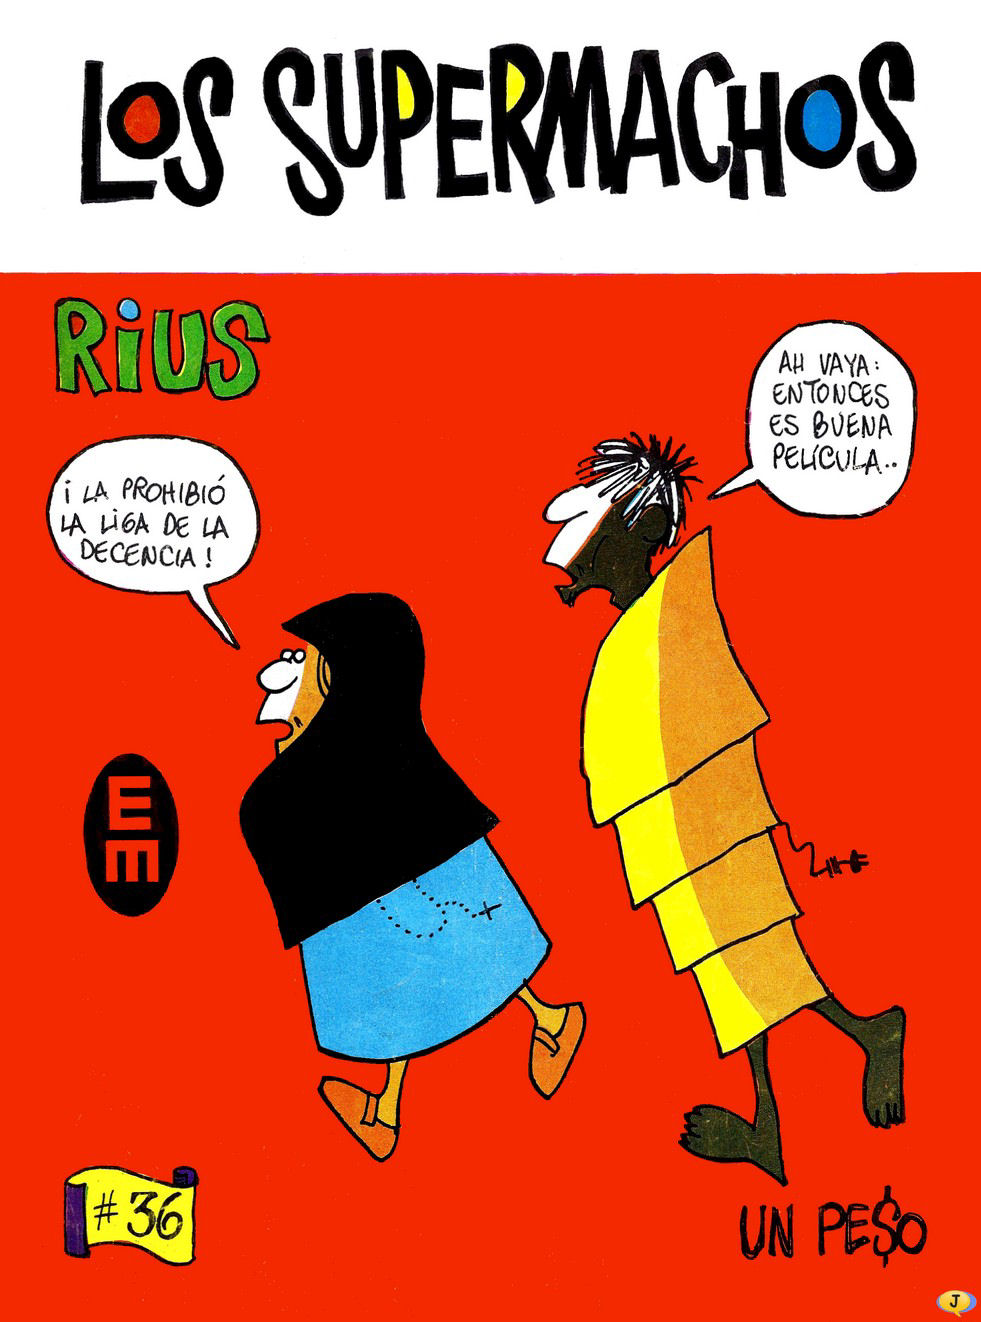 Rius, Eduardo del Rio, Los supermachos